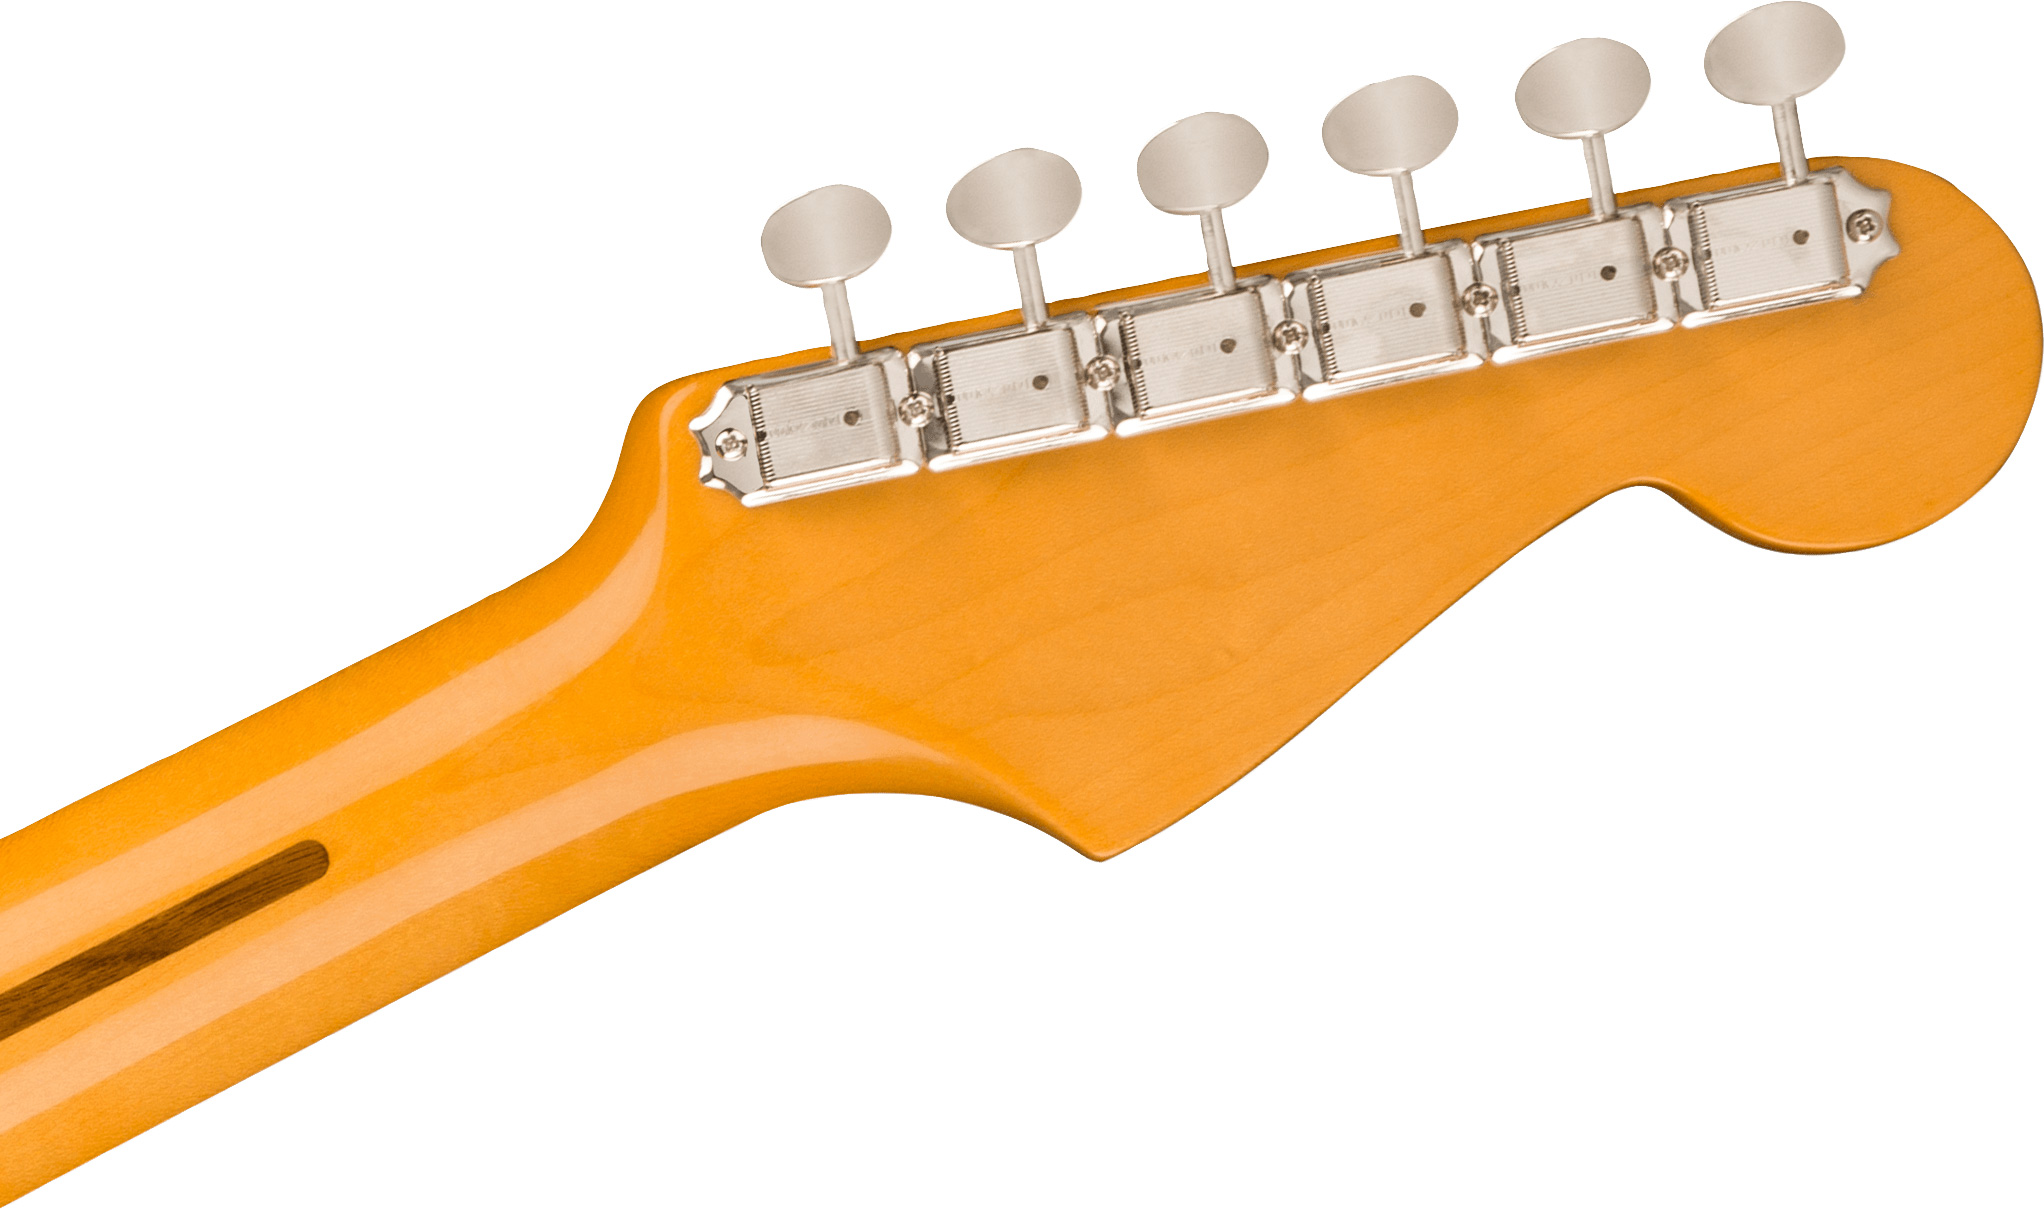 Fender Strat 1957 American Vintage Ii Lh Gaucher Usa 3s Trem Mn - 2-color Sunburst - Guitarra electrica para zurdos - Variation 3